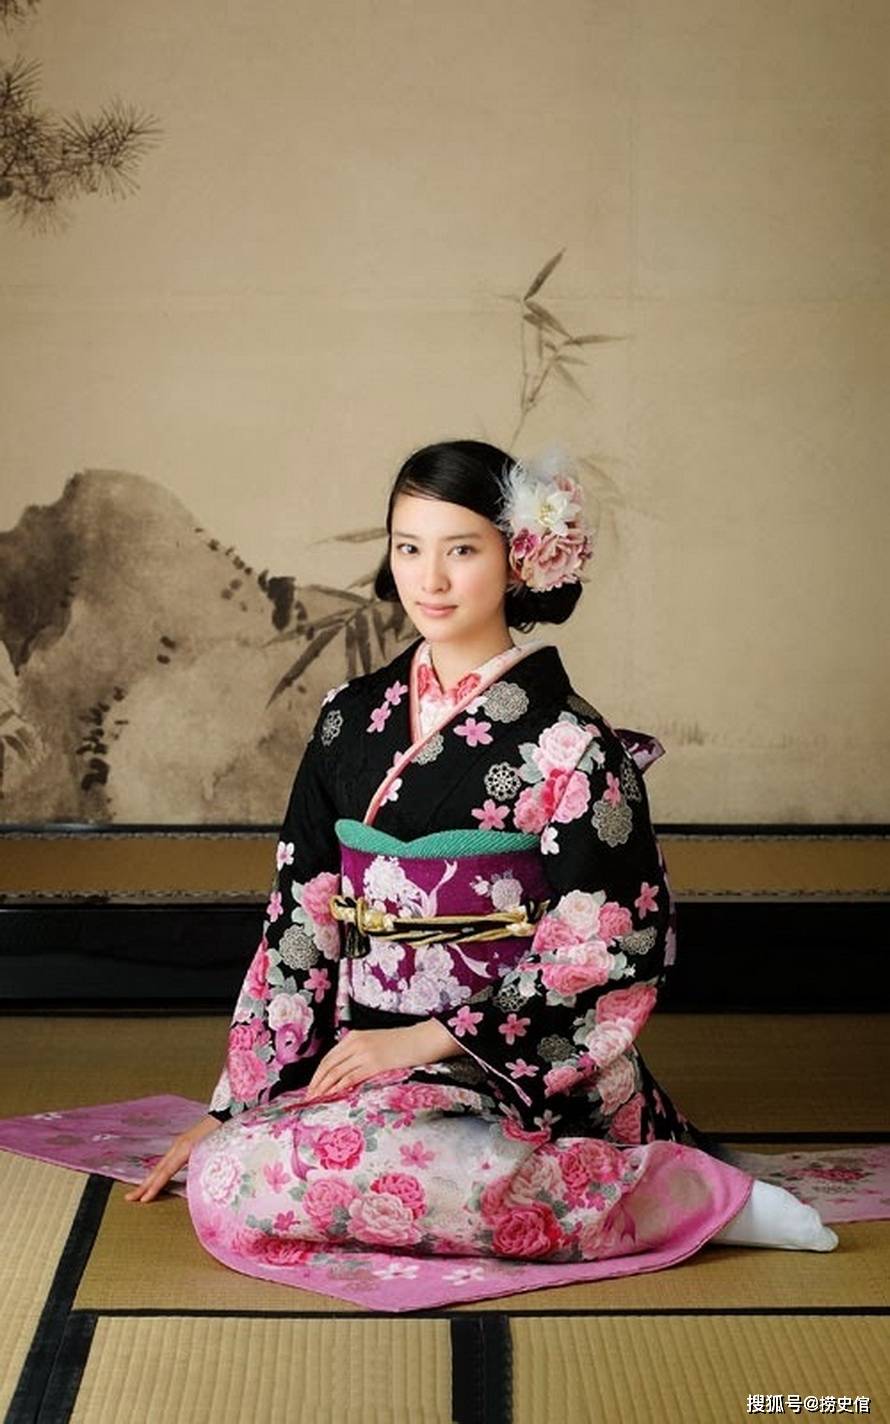 日本女星武井咲和服写真绚烂多彩宛如待嫁新娘